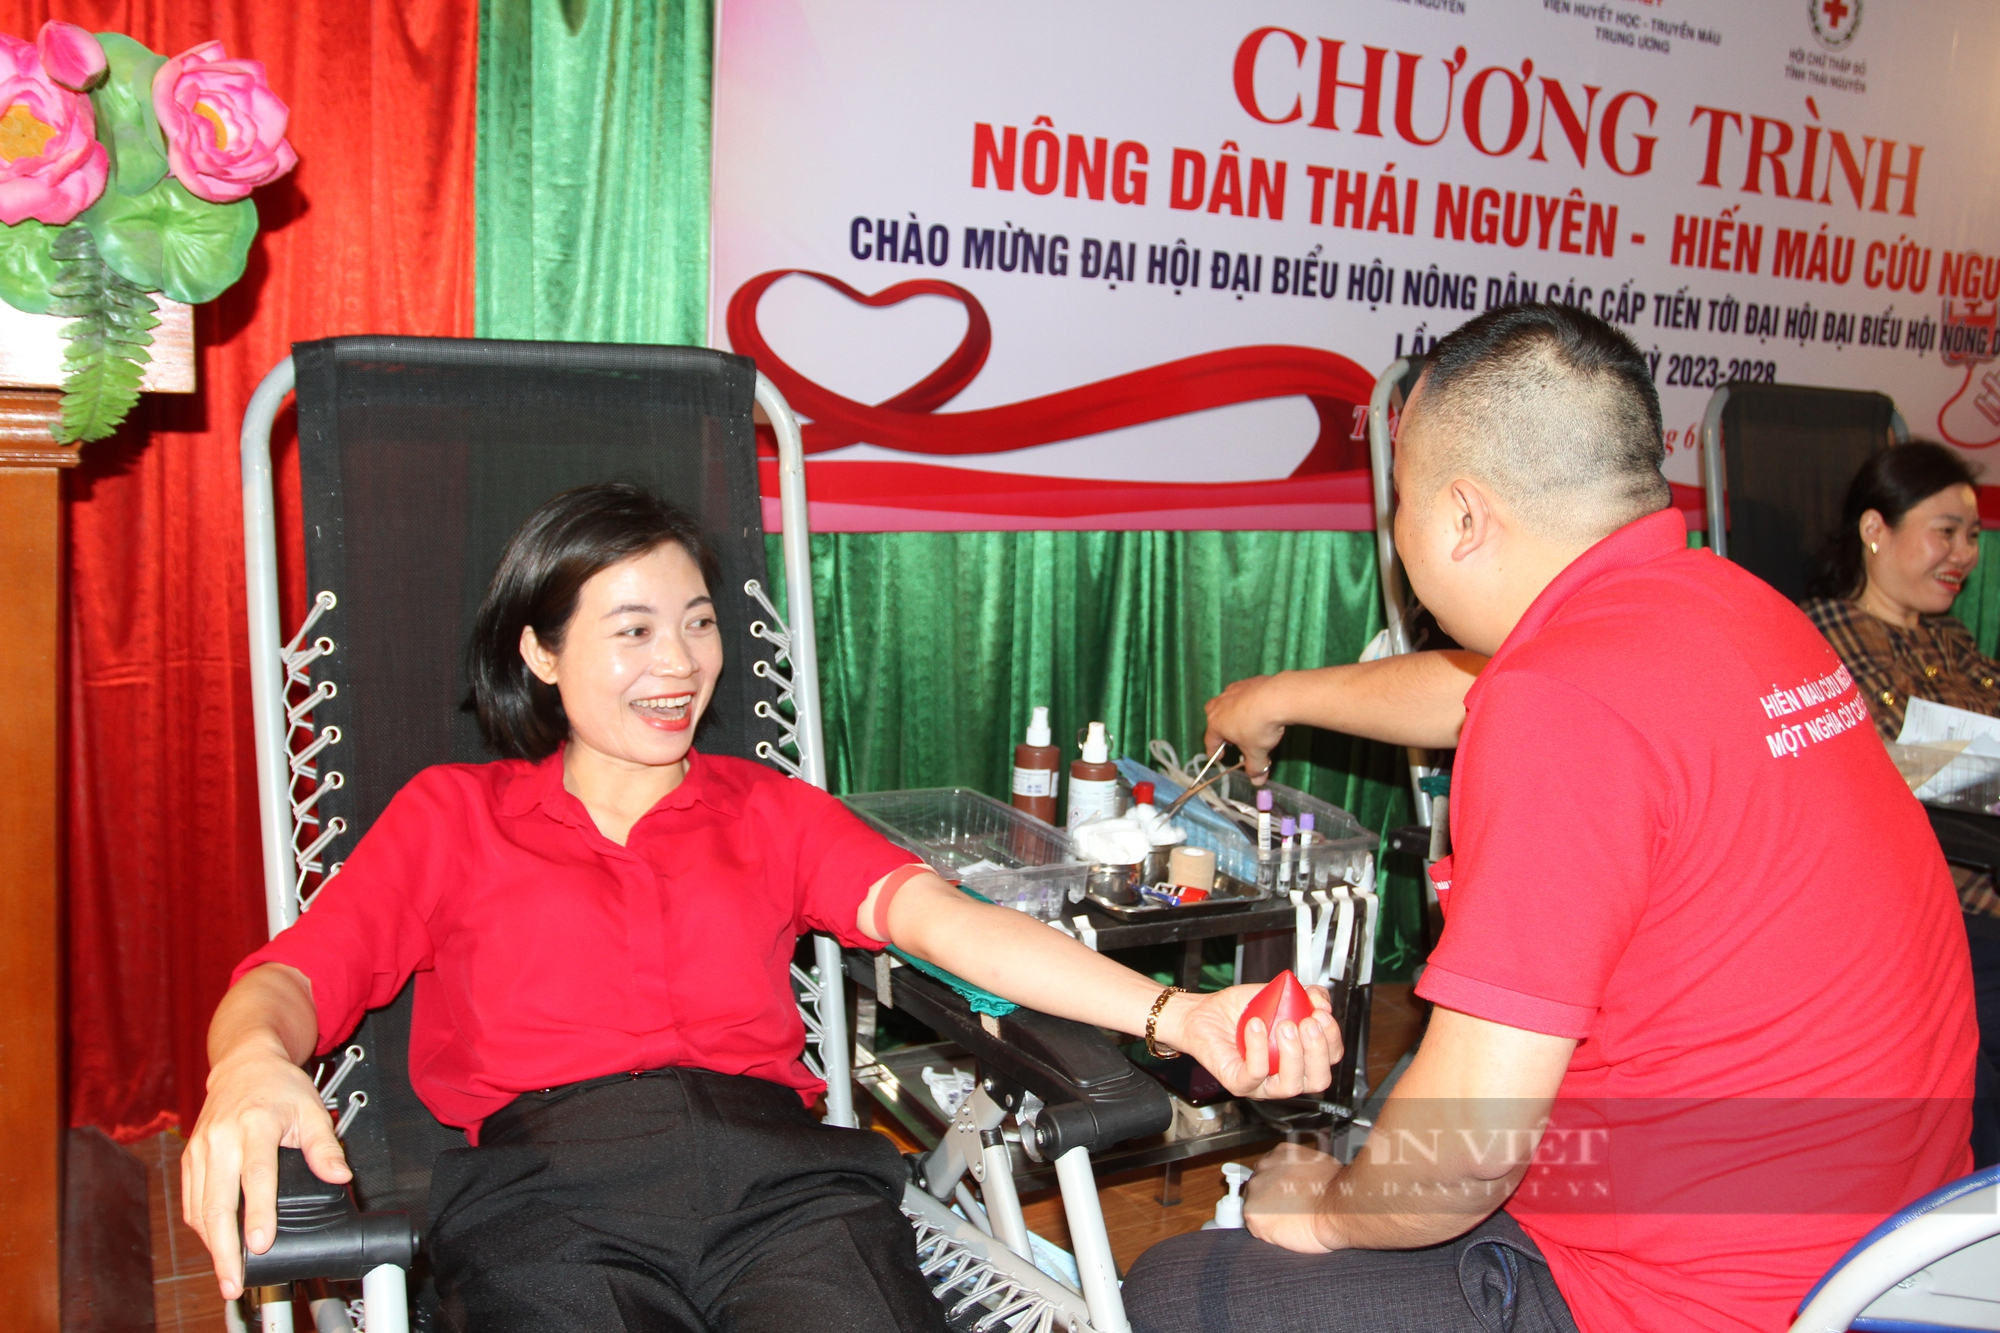 Hơn 500 cán bộ, hội viên nông dân Thái Nguyên tham gia chương trình hiến máu cứu người - Ảnh 6.